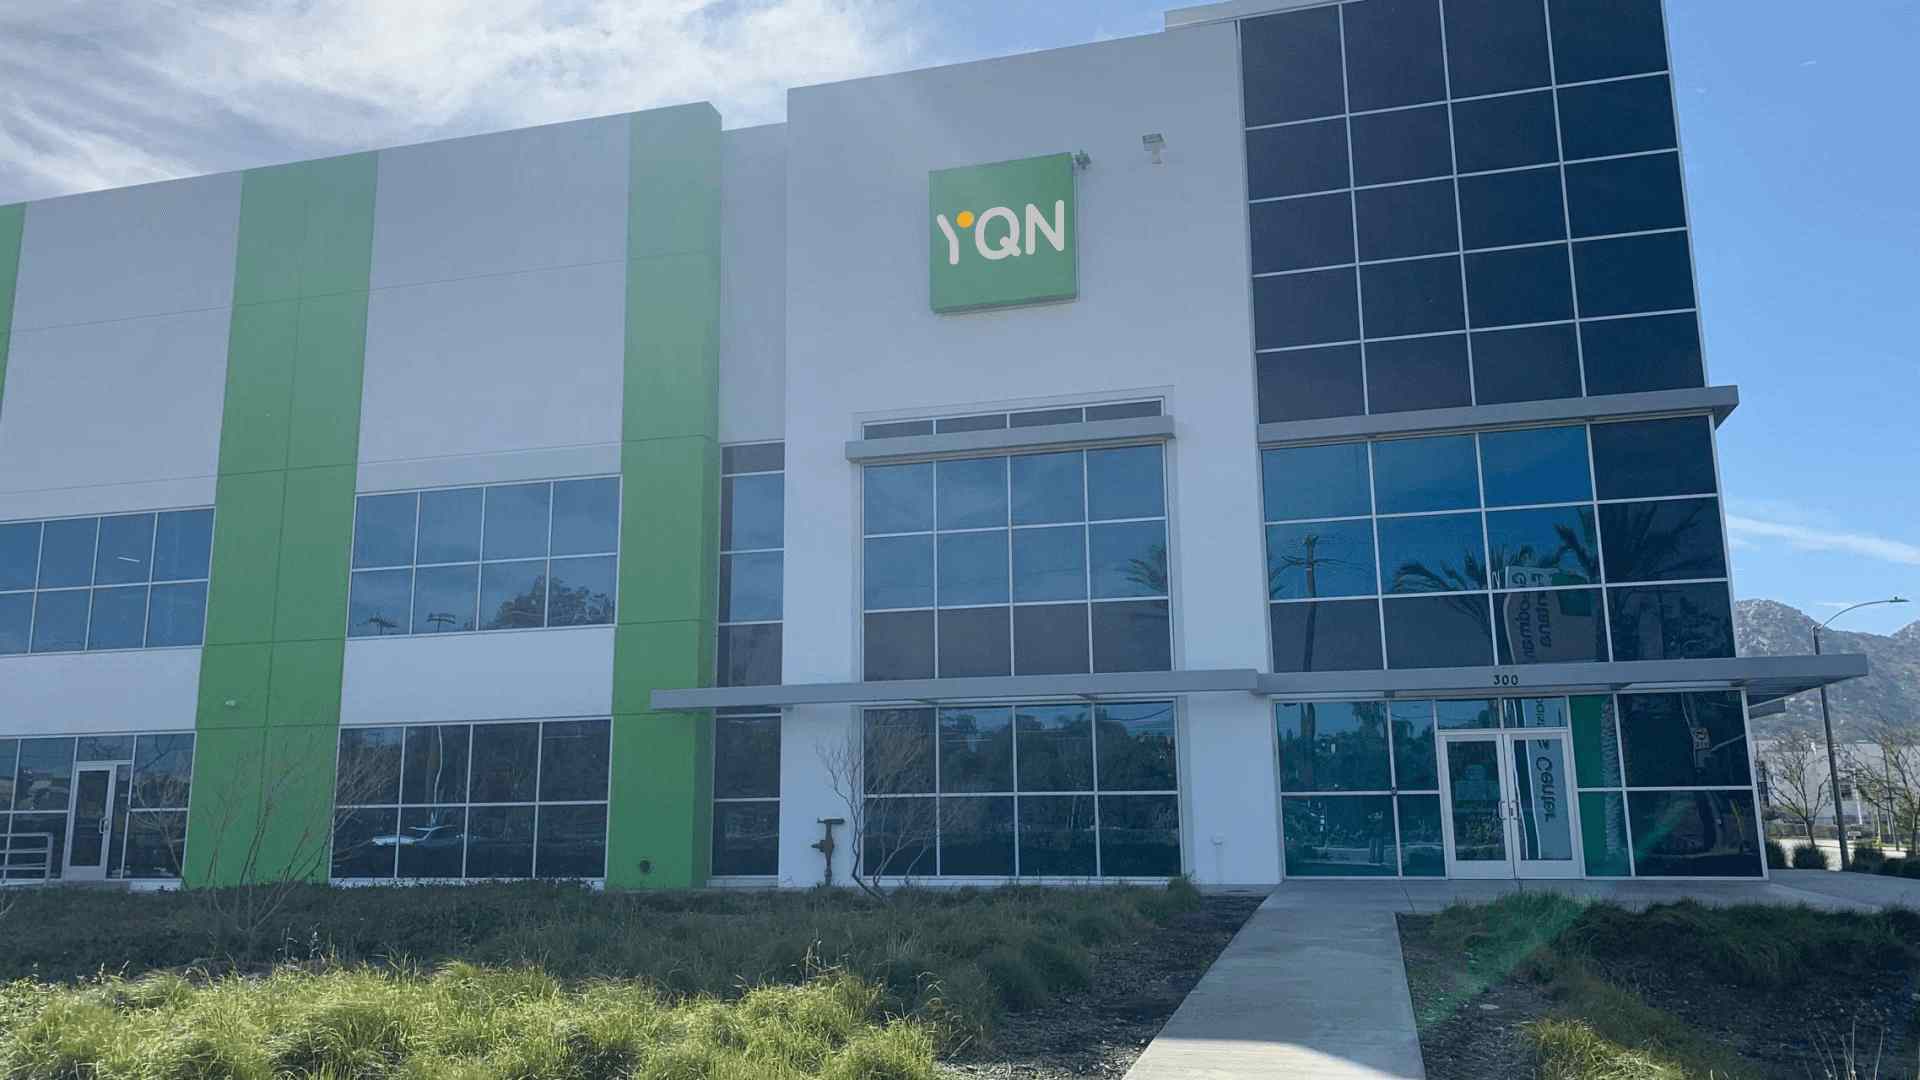 YQN LA Warehouse 1